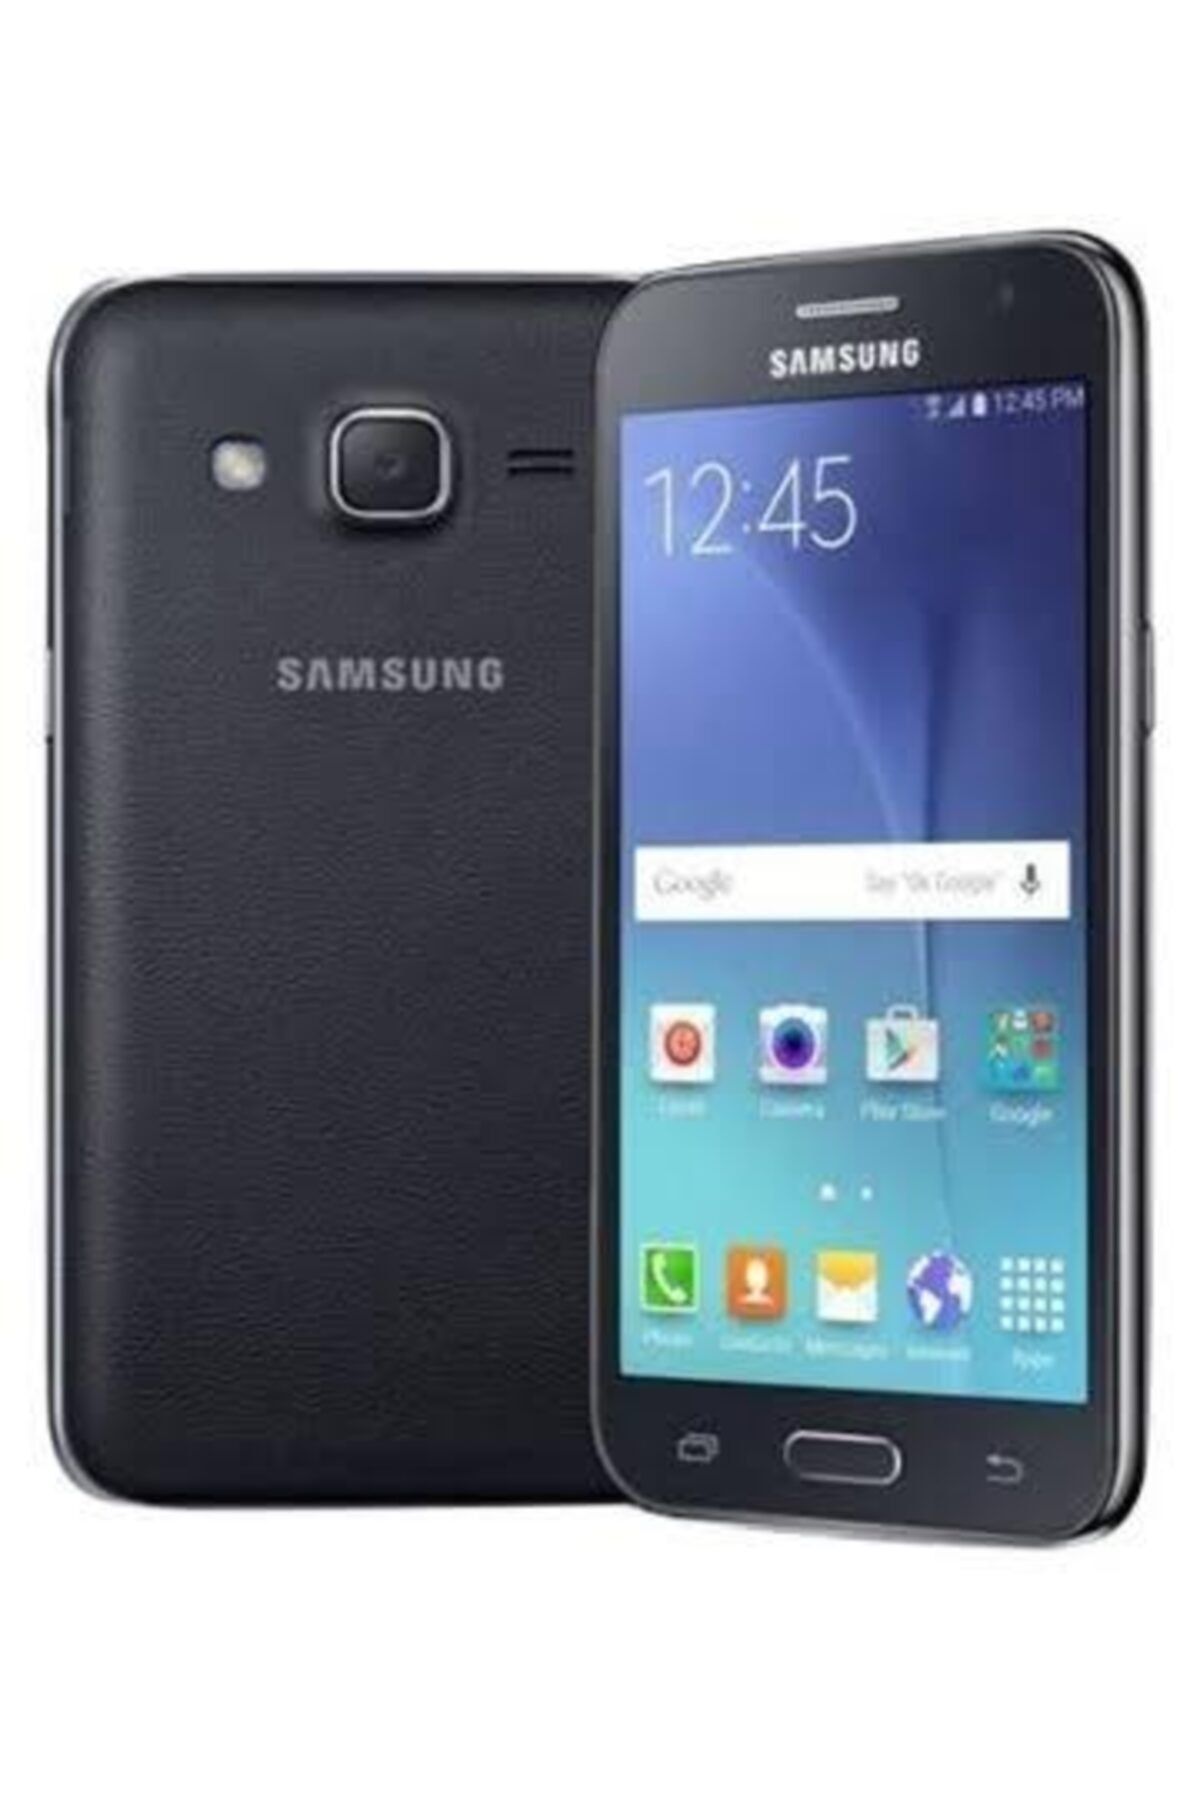 Samsung Galaxy J2 J200f - Siyah Renk - 8GB - (Ithalatçı Garanti)